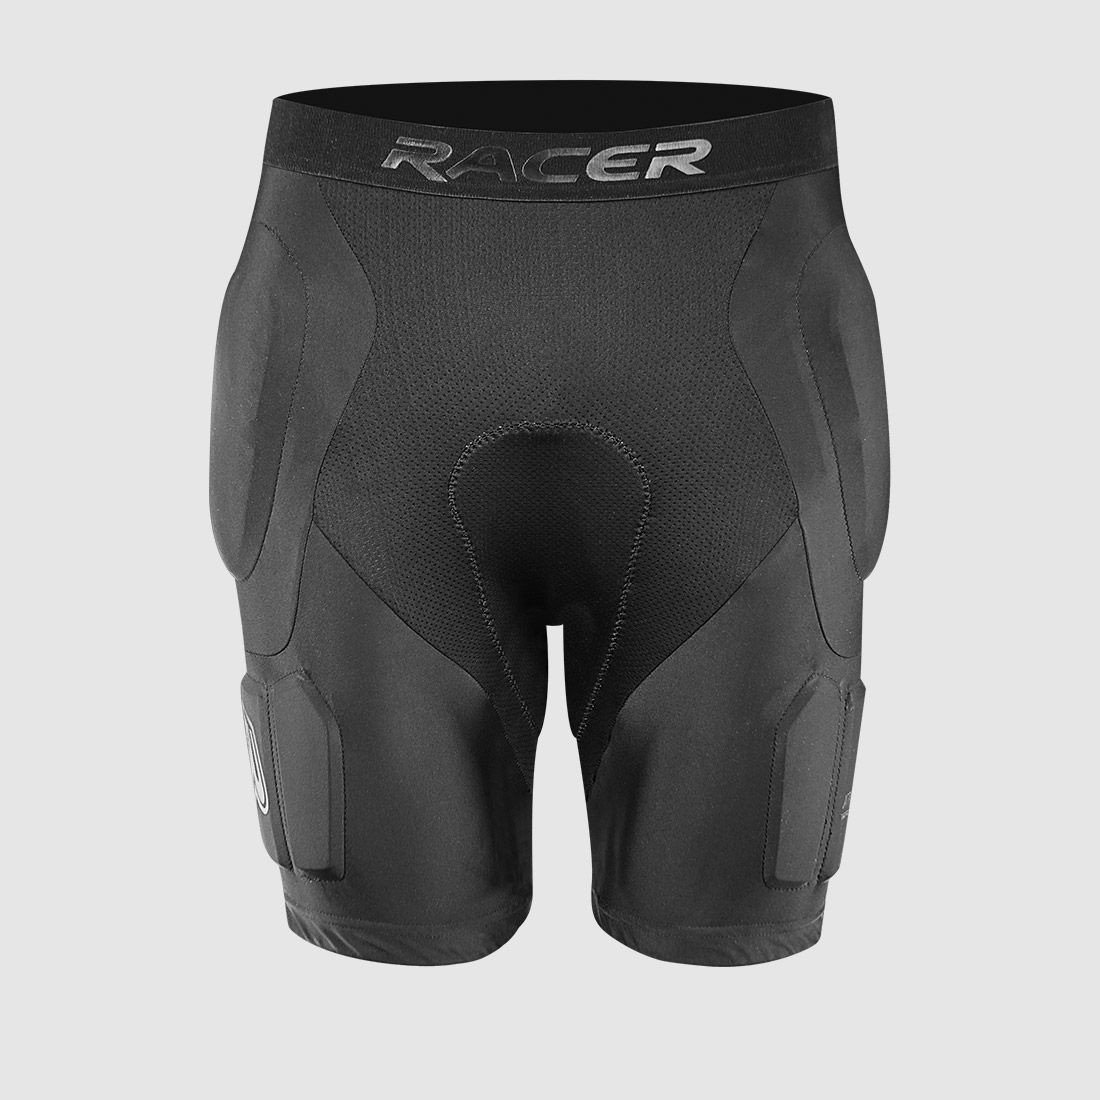 RACER PROFILE SUB-SHORT šortky pod kalhoty (černá, vel. S)